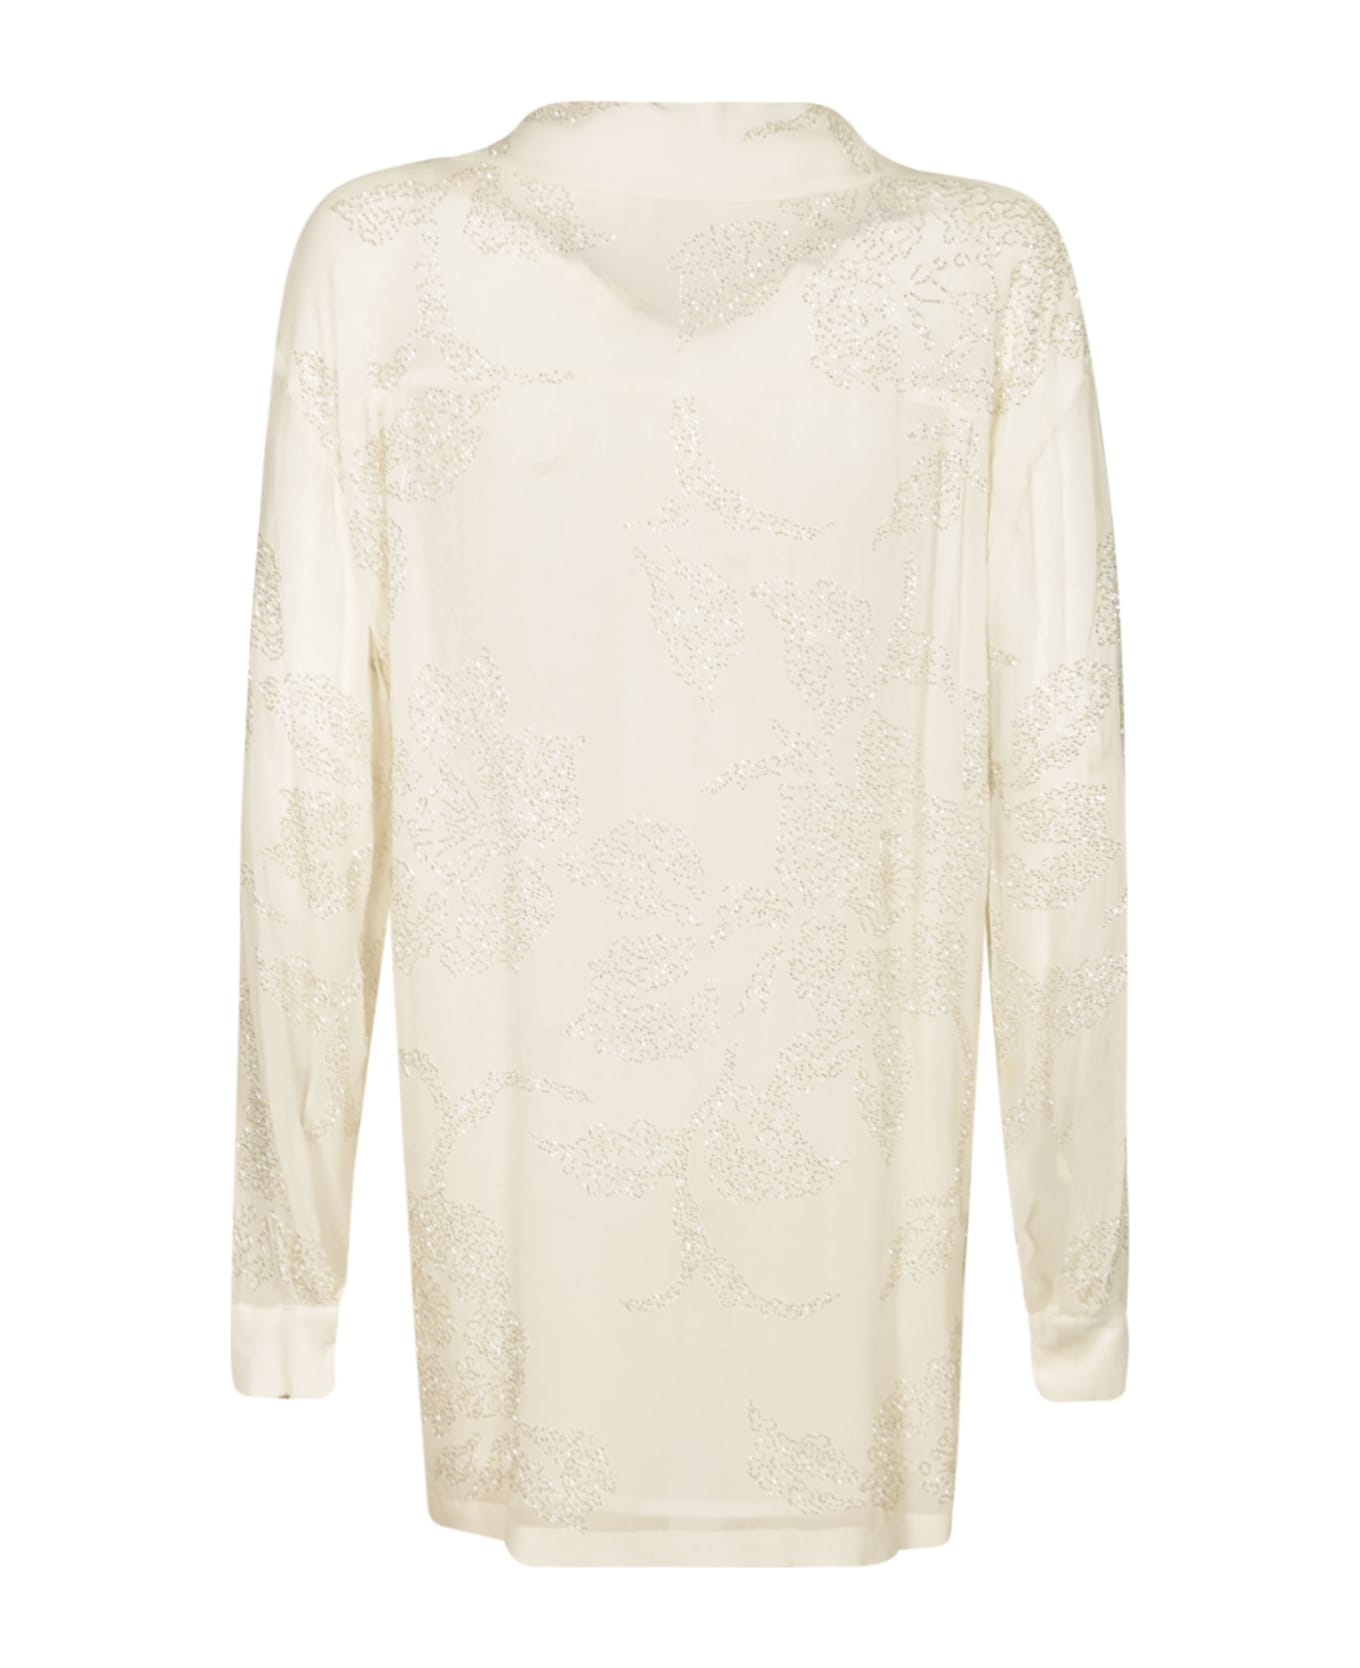 Parosh Glittery Shirt - White シャツ